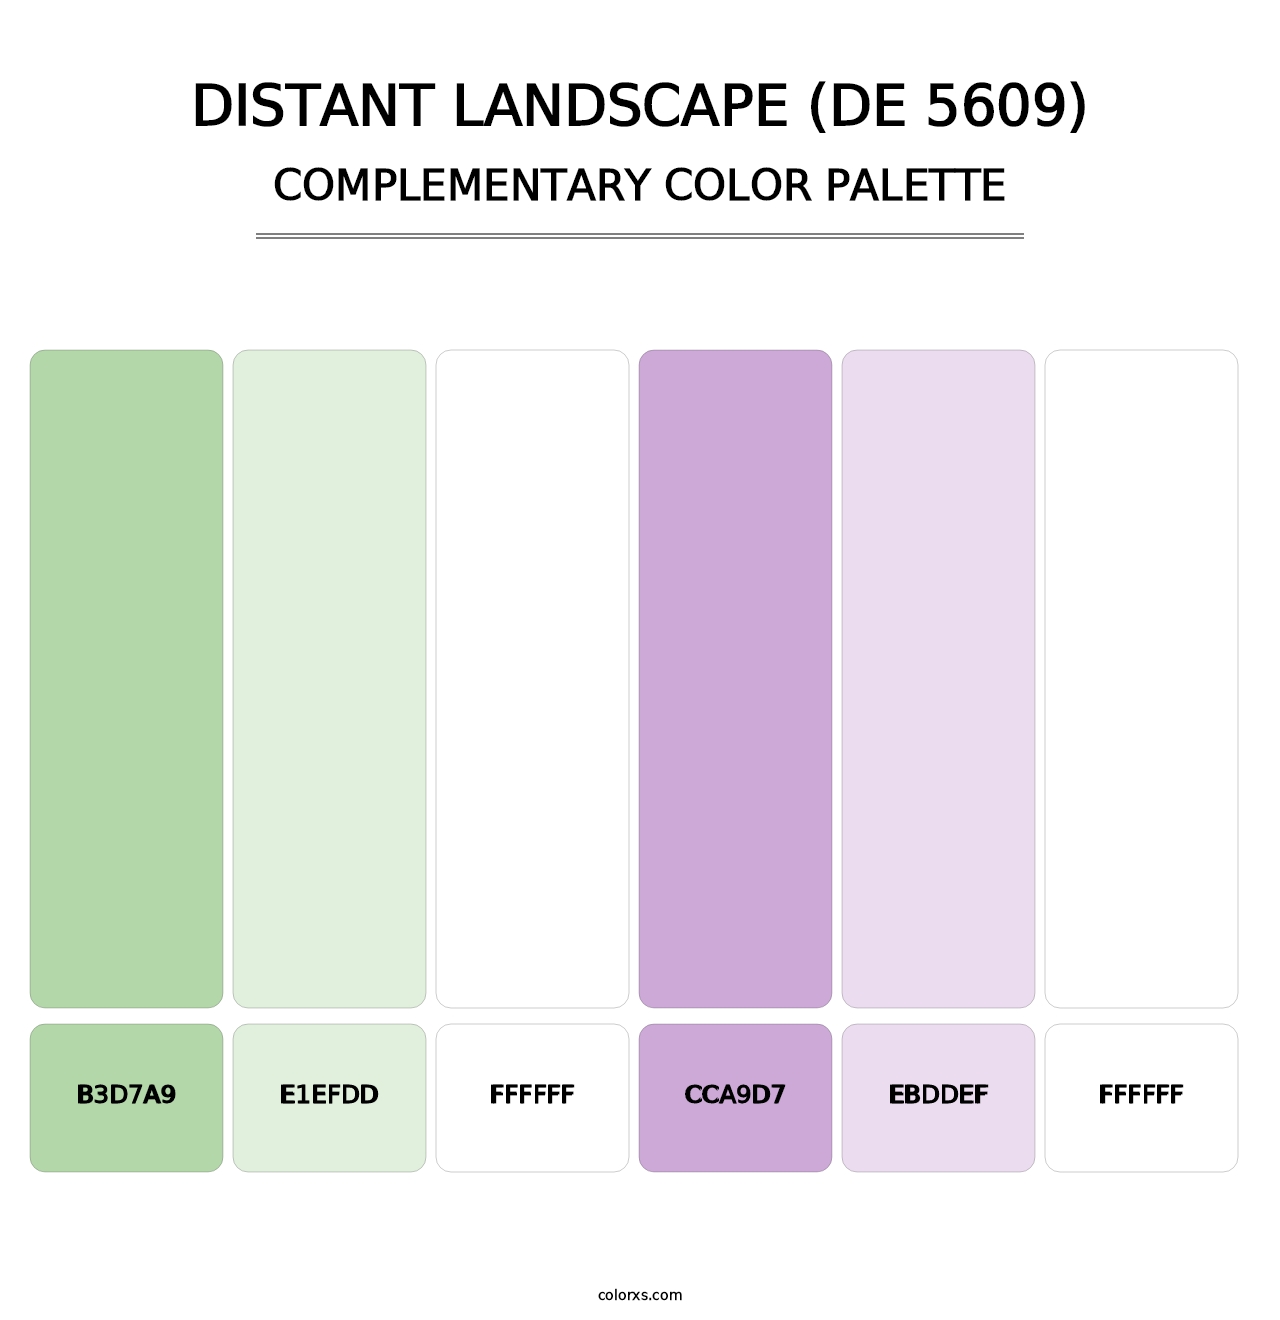 Distant Landscape (DE 5609) - Complementary Color Palette